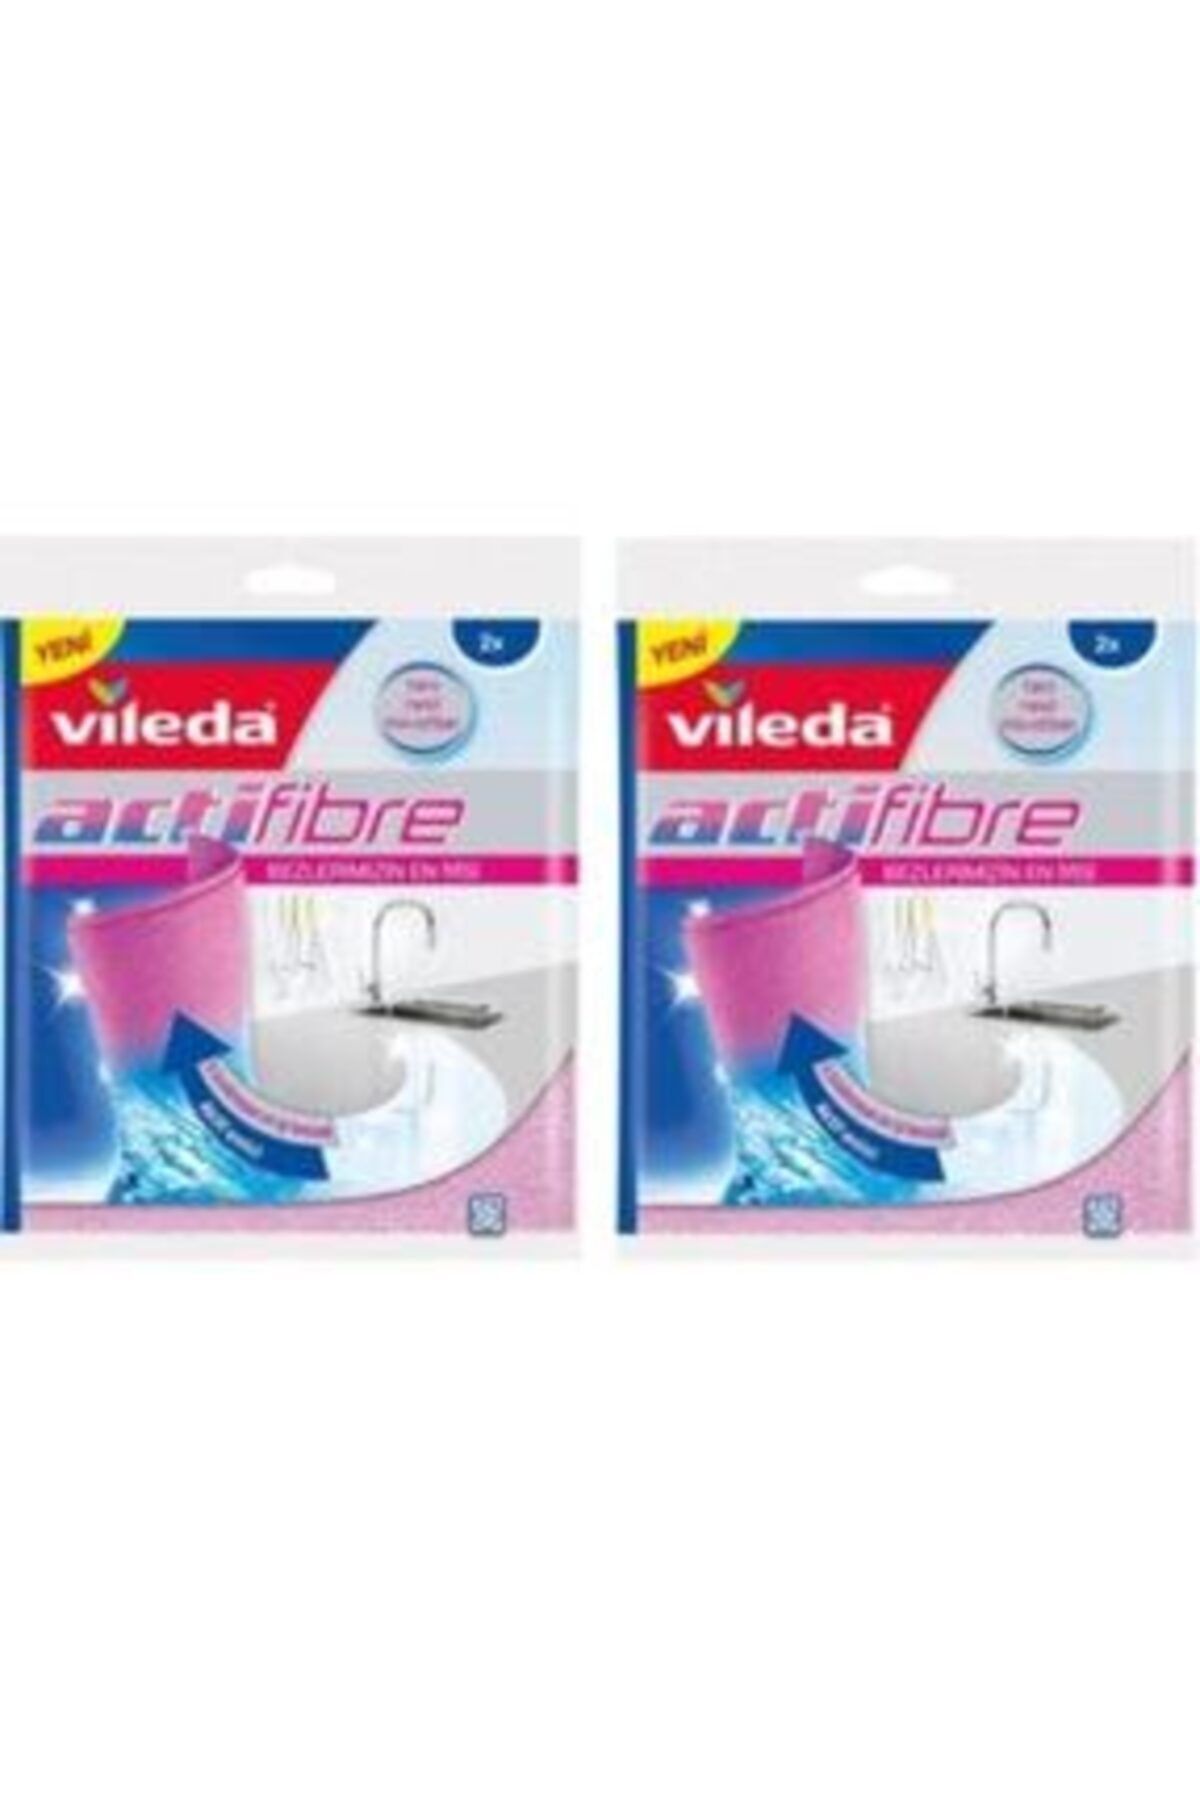 Best Deal for Vileda Actifibre Wipe 1 Piece